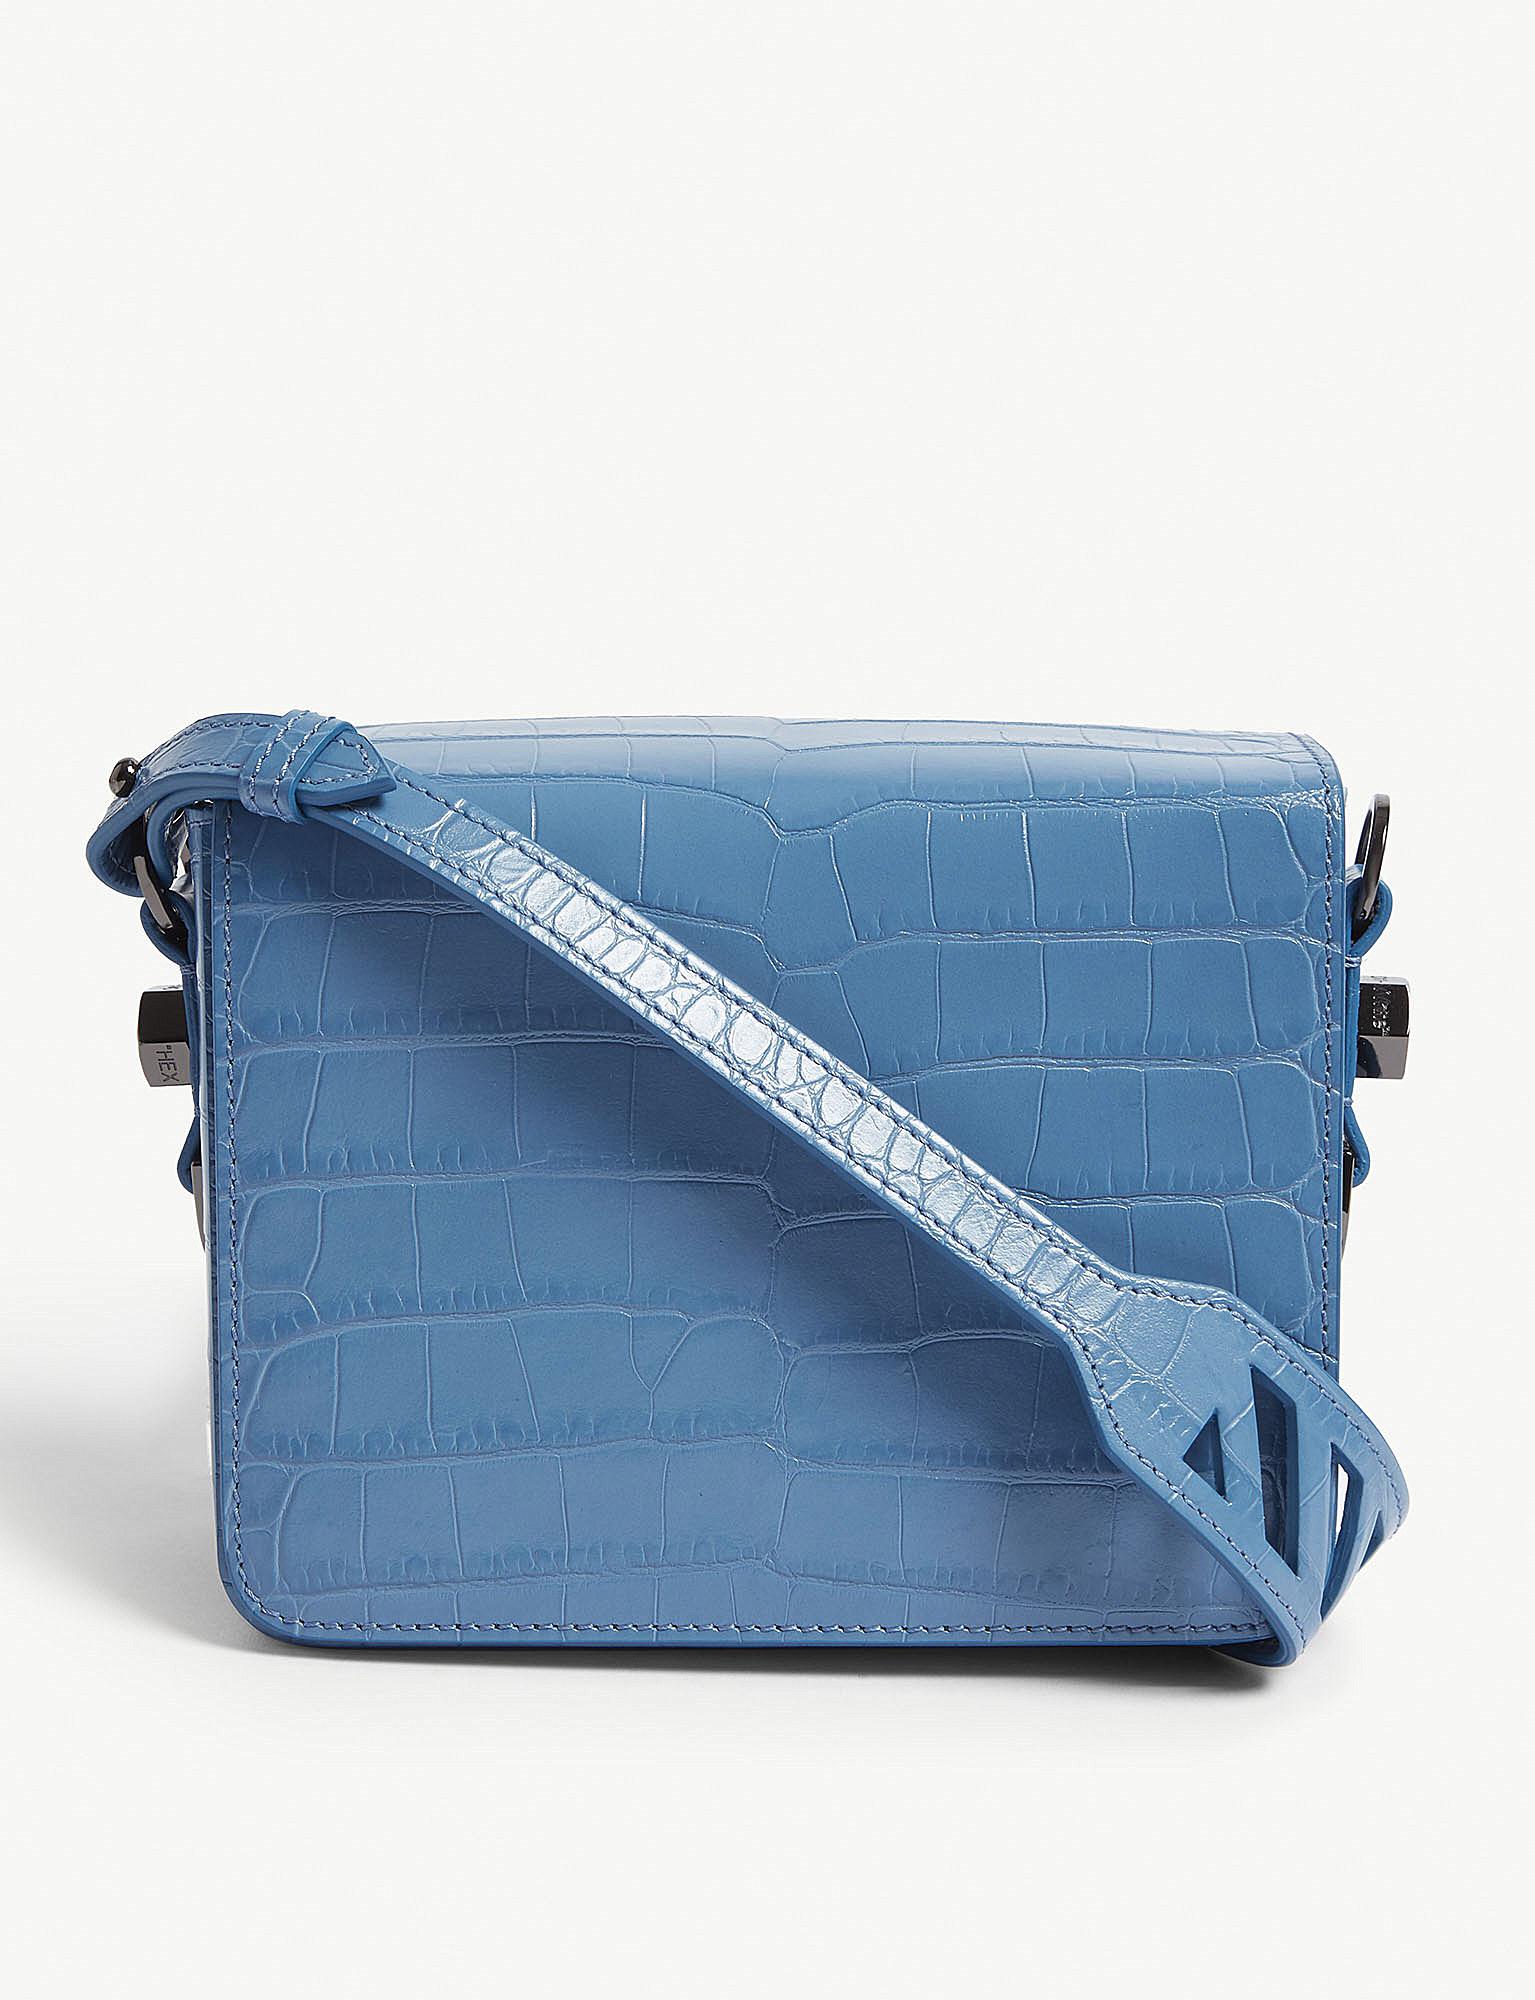 Off-White c/o Virgil Abloh Leather Crocodile Binder Clip Mini Shoulder Bag in Blue - Lyst